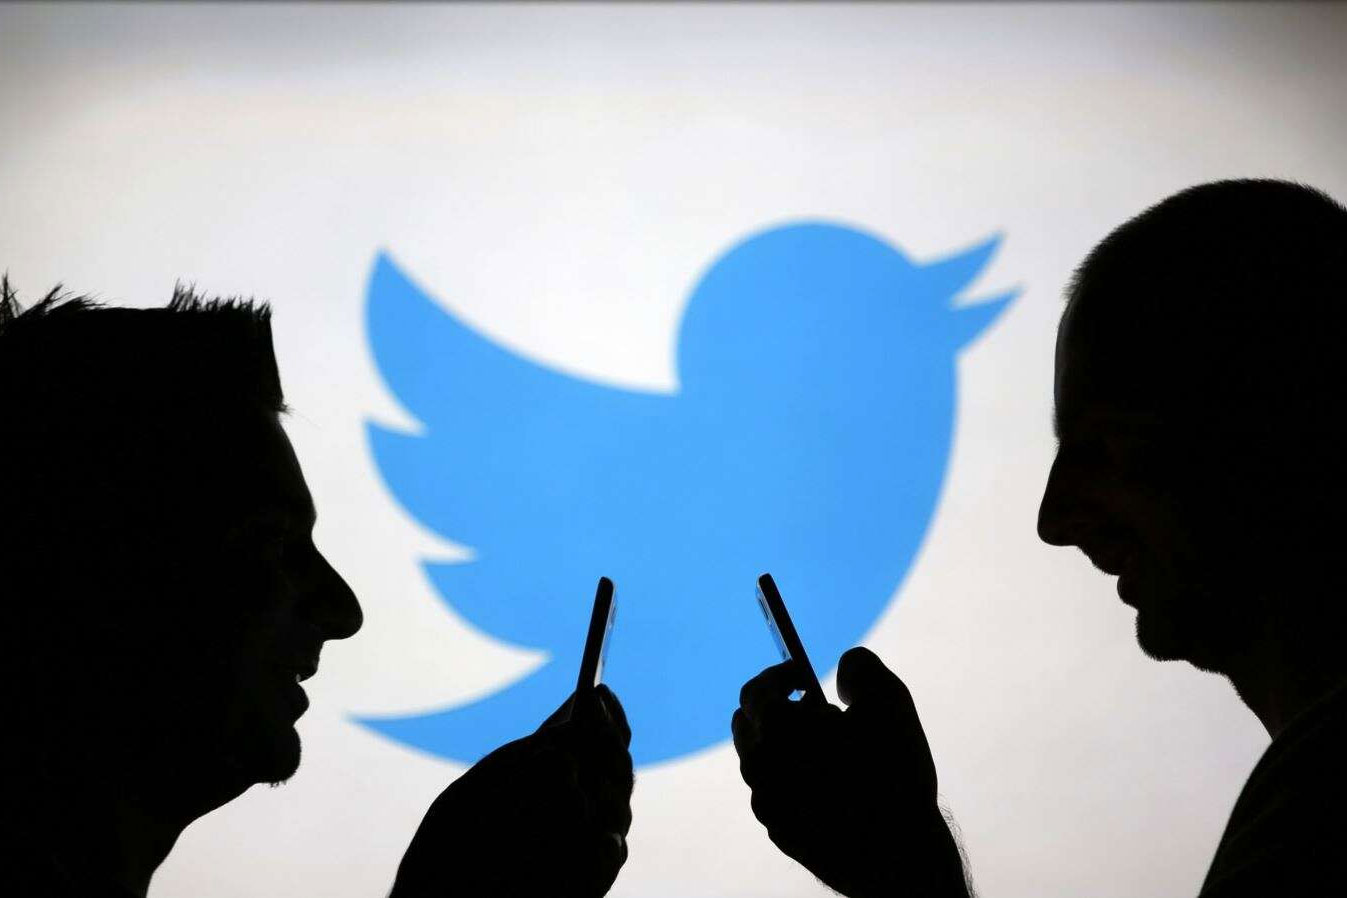 Ամերիկացի դեռահասը մեղադրվում է հայտնիների Twitter-յան հաշիվները թալանելու մեջ